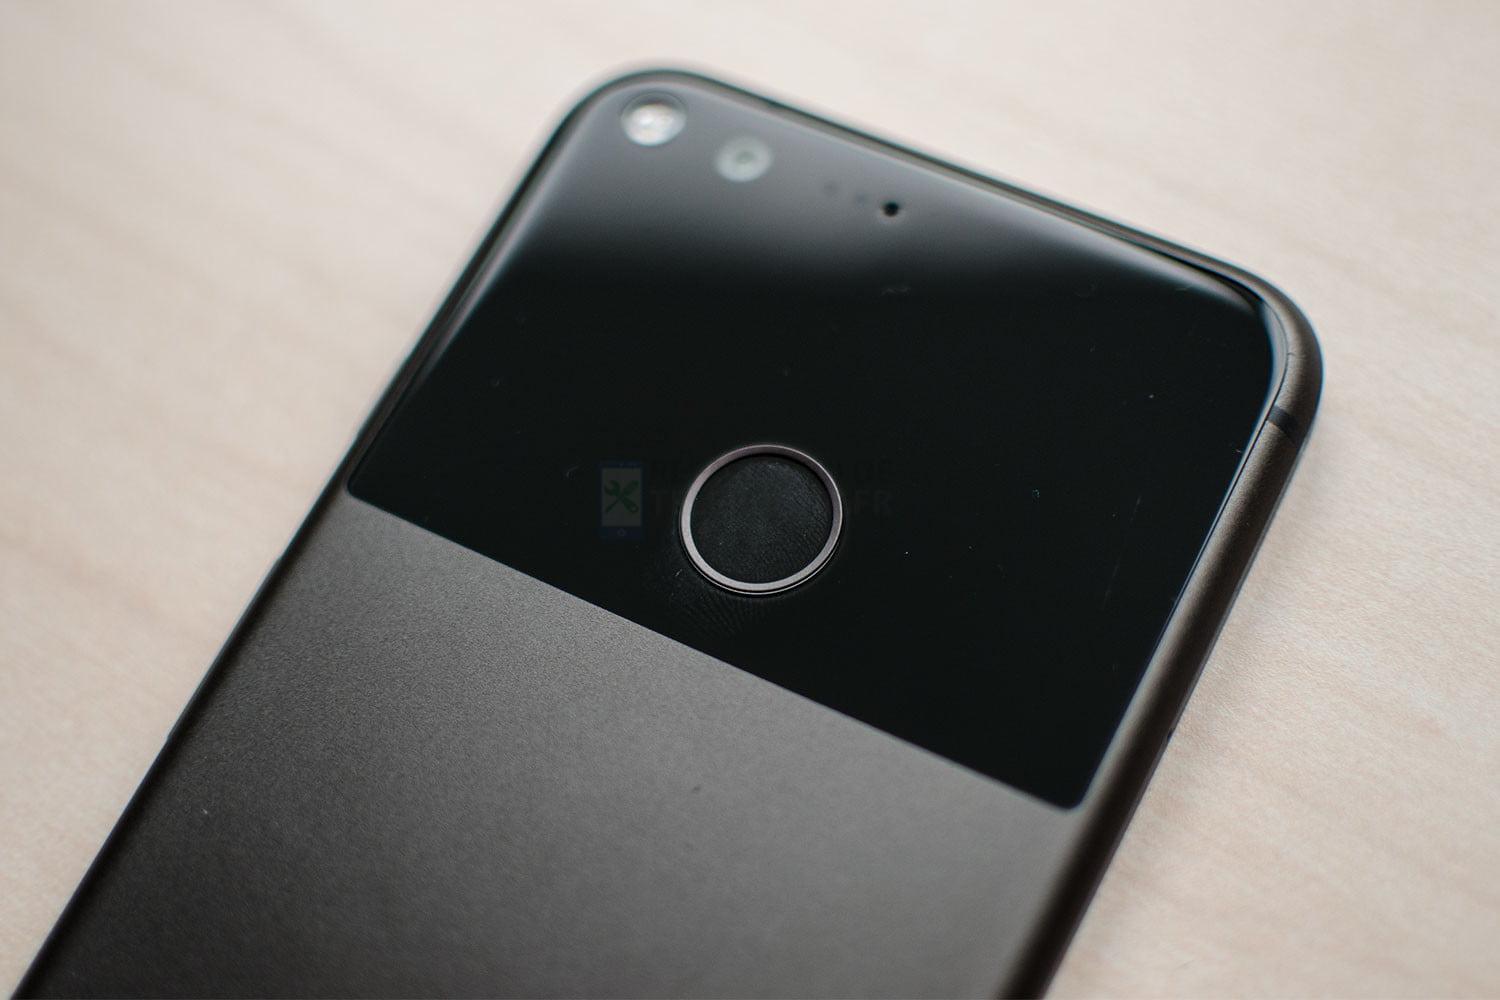 Résolu : Google Pixel XL ne se connecte pas au réseau Wi-Fi